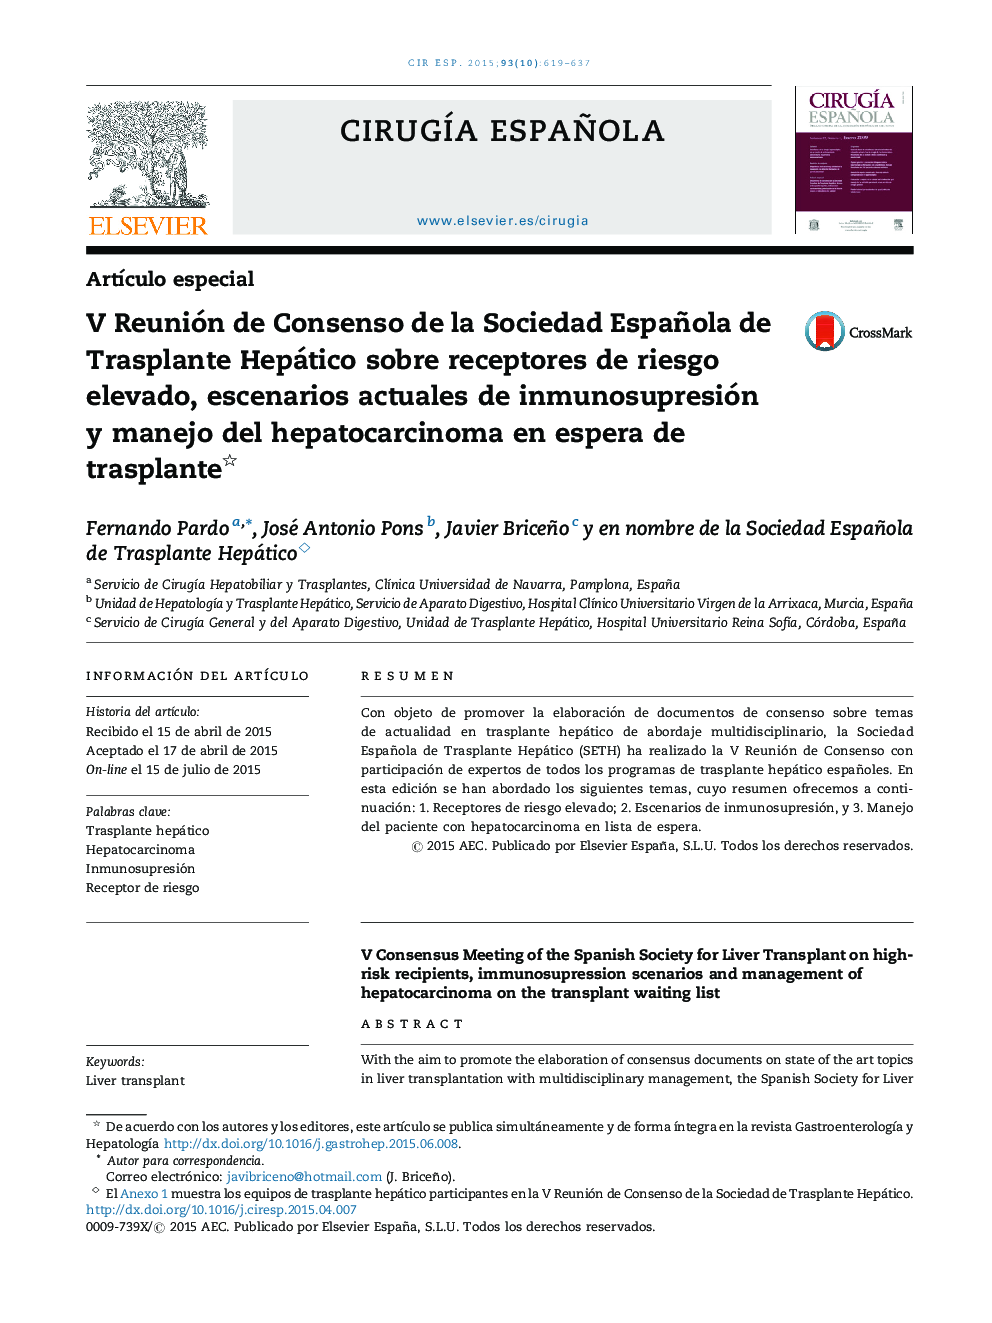 V Reunión de Consenso de la Sociedad Española de Trasplante Hepático sobre receptores de riesgo elevado, escenarios actuales de inmunosupresión y manejo del hepatocarcinoma en espera de trasplante 